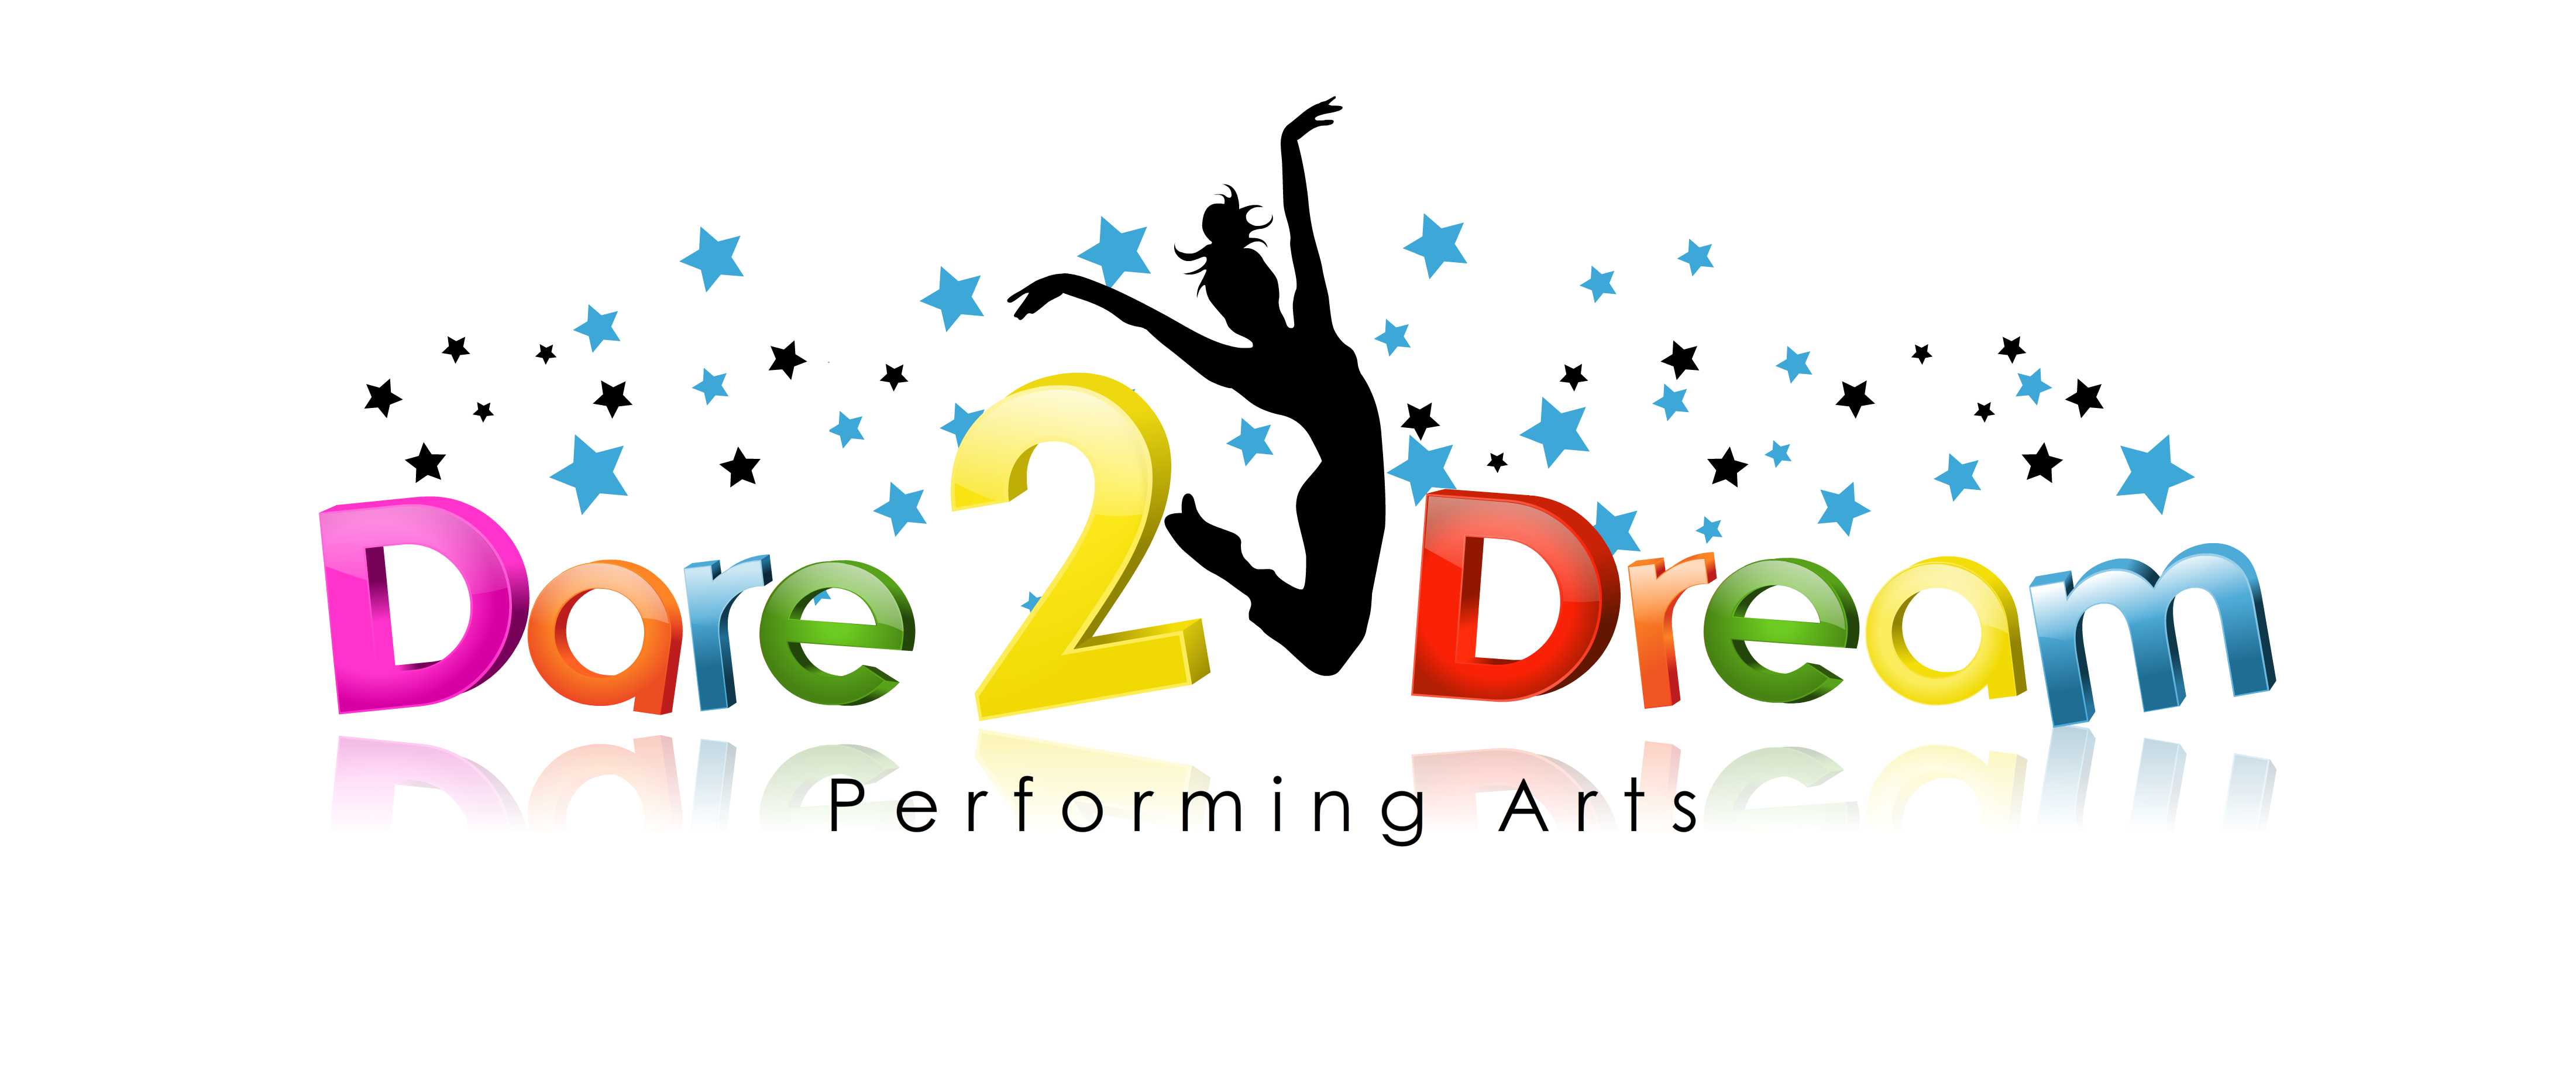 Dance logo new stars